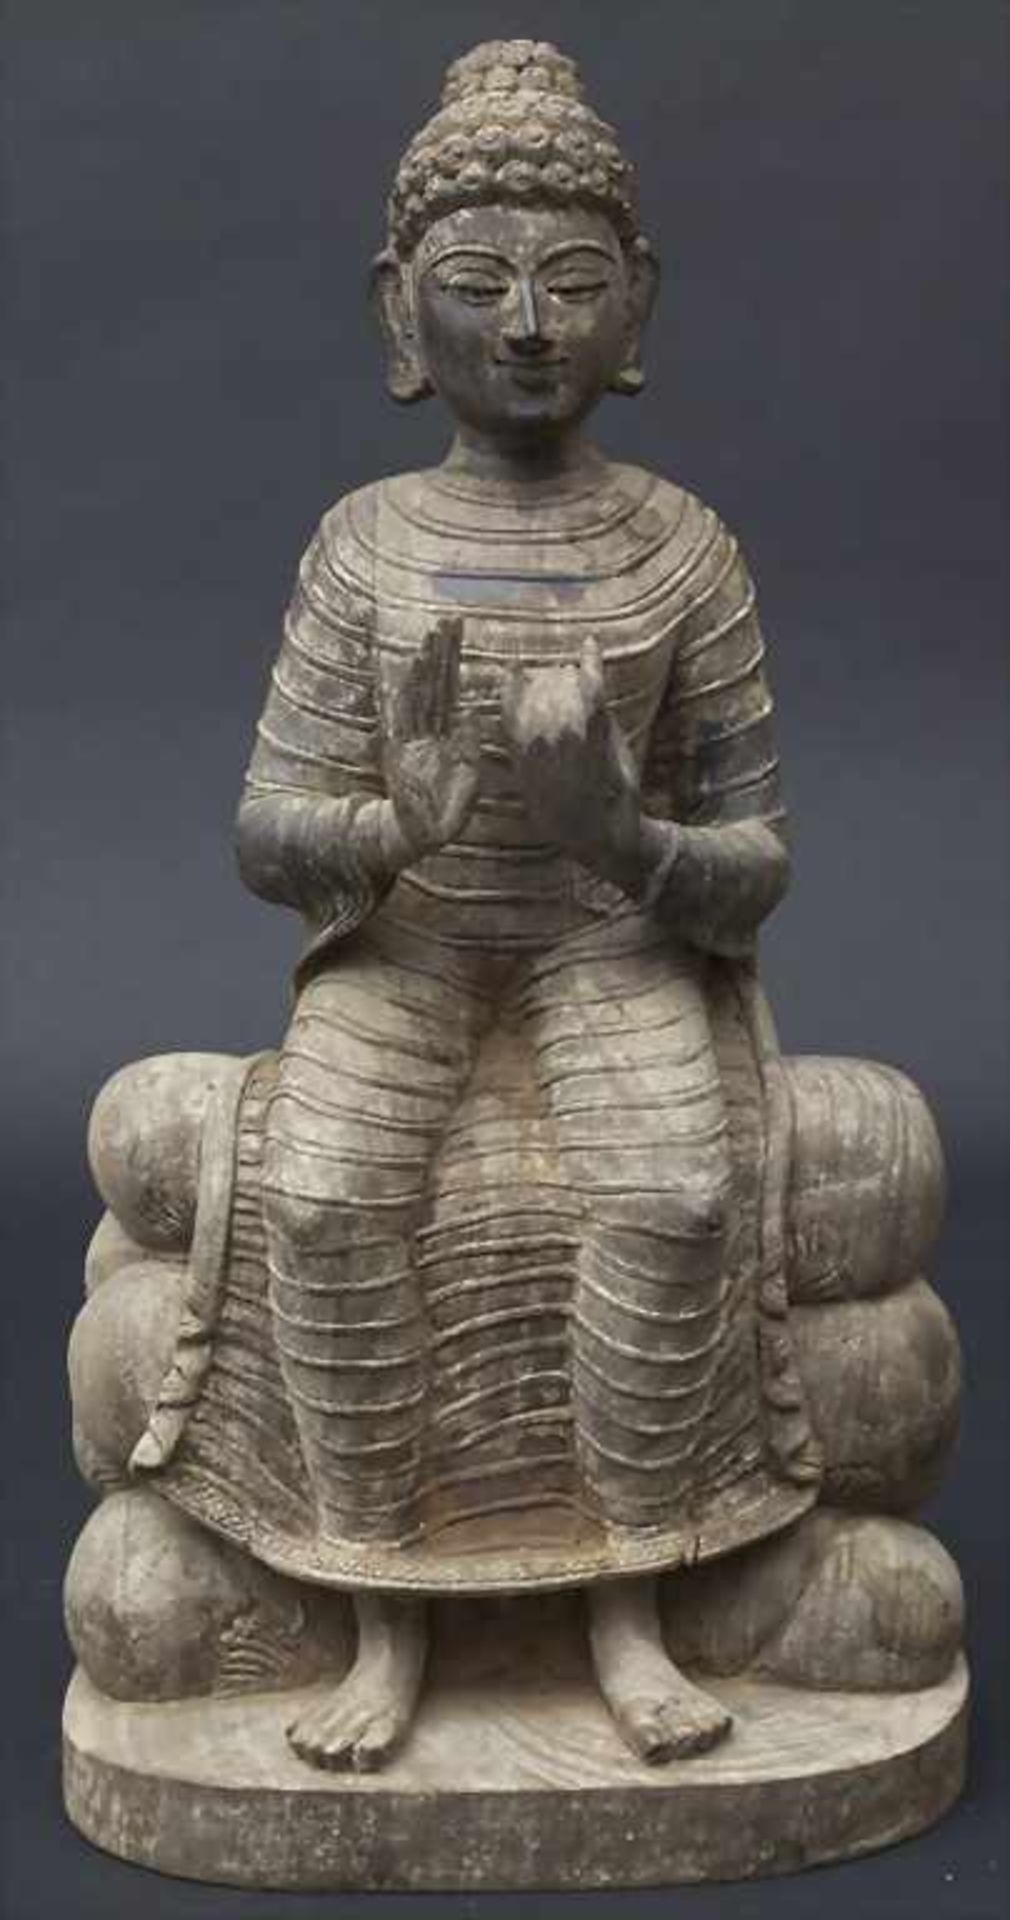 Lehrender Buddha, Nordwestpakistan, um 1910Material: Holz,Marke: ungemarkt,Maße: H. 37,5cm,